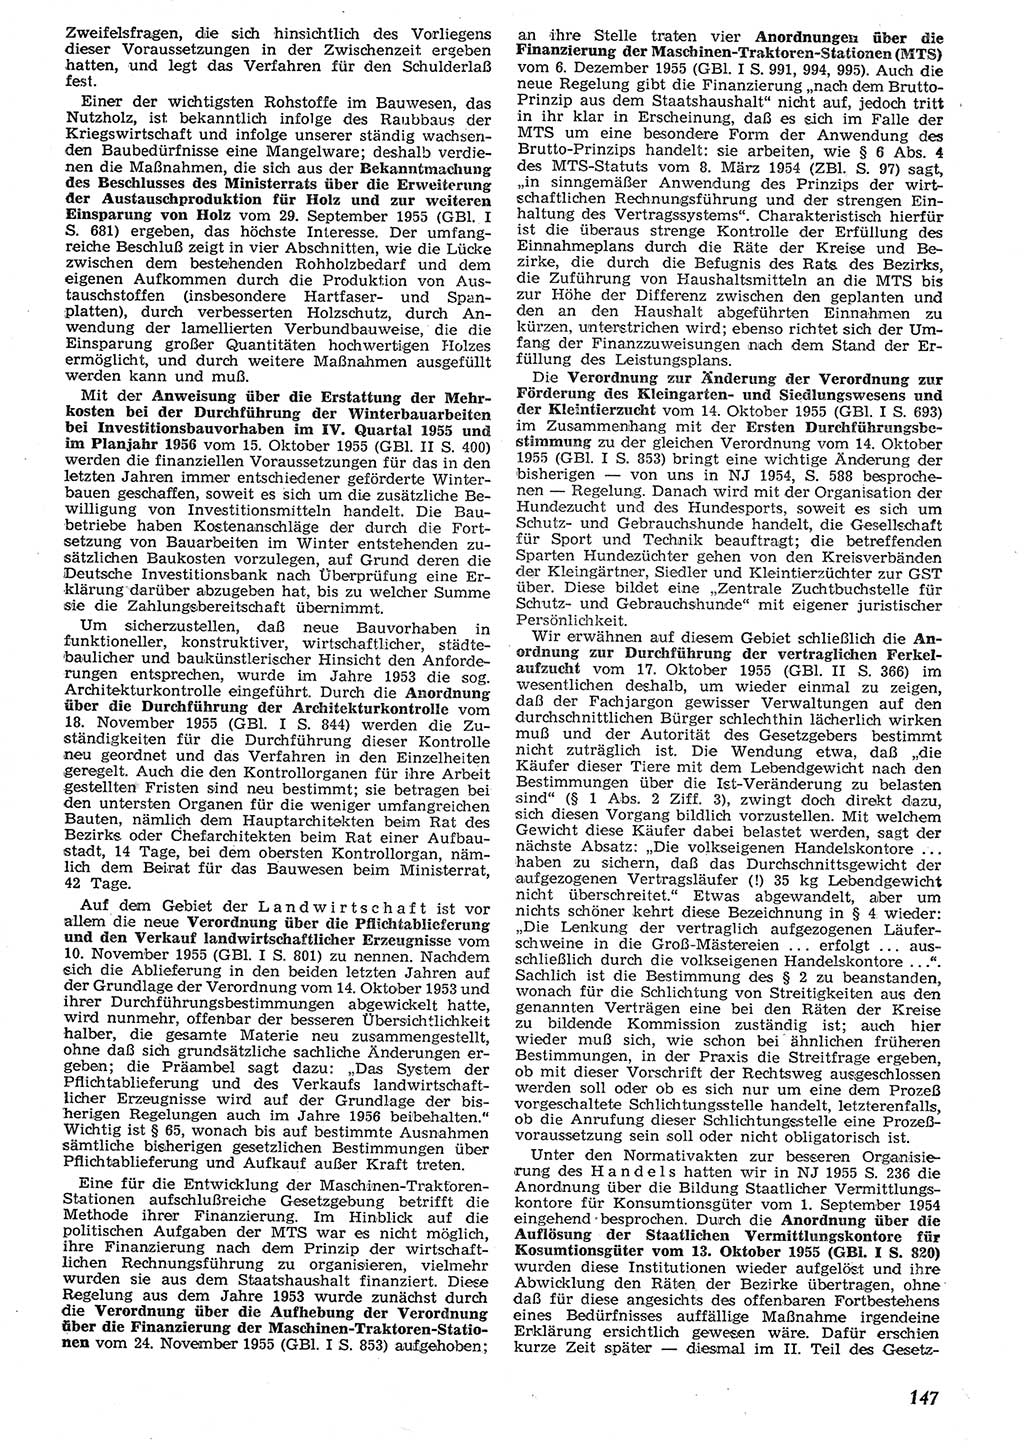 Neue Justiz (NJ), Zeitschrift für Recht und Rechtswissenschaft [Deutsche Demokratische Republik (DDR)], 10. Jahrgang 1956, Seite 147 (NJ DDR 1956, S. 147)